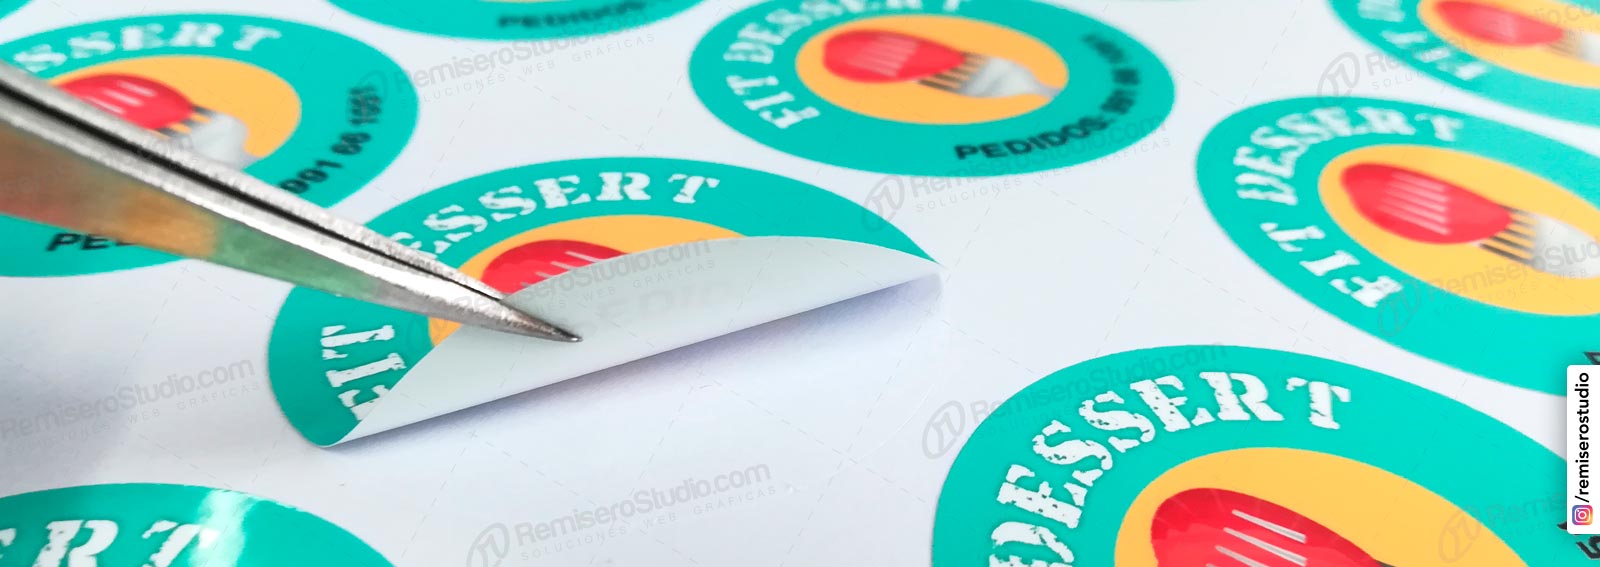 Etiquetas Adhesivas: Impresión de stickers adhesivos